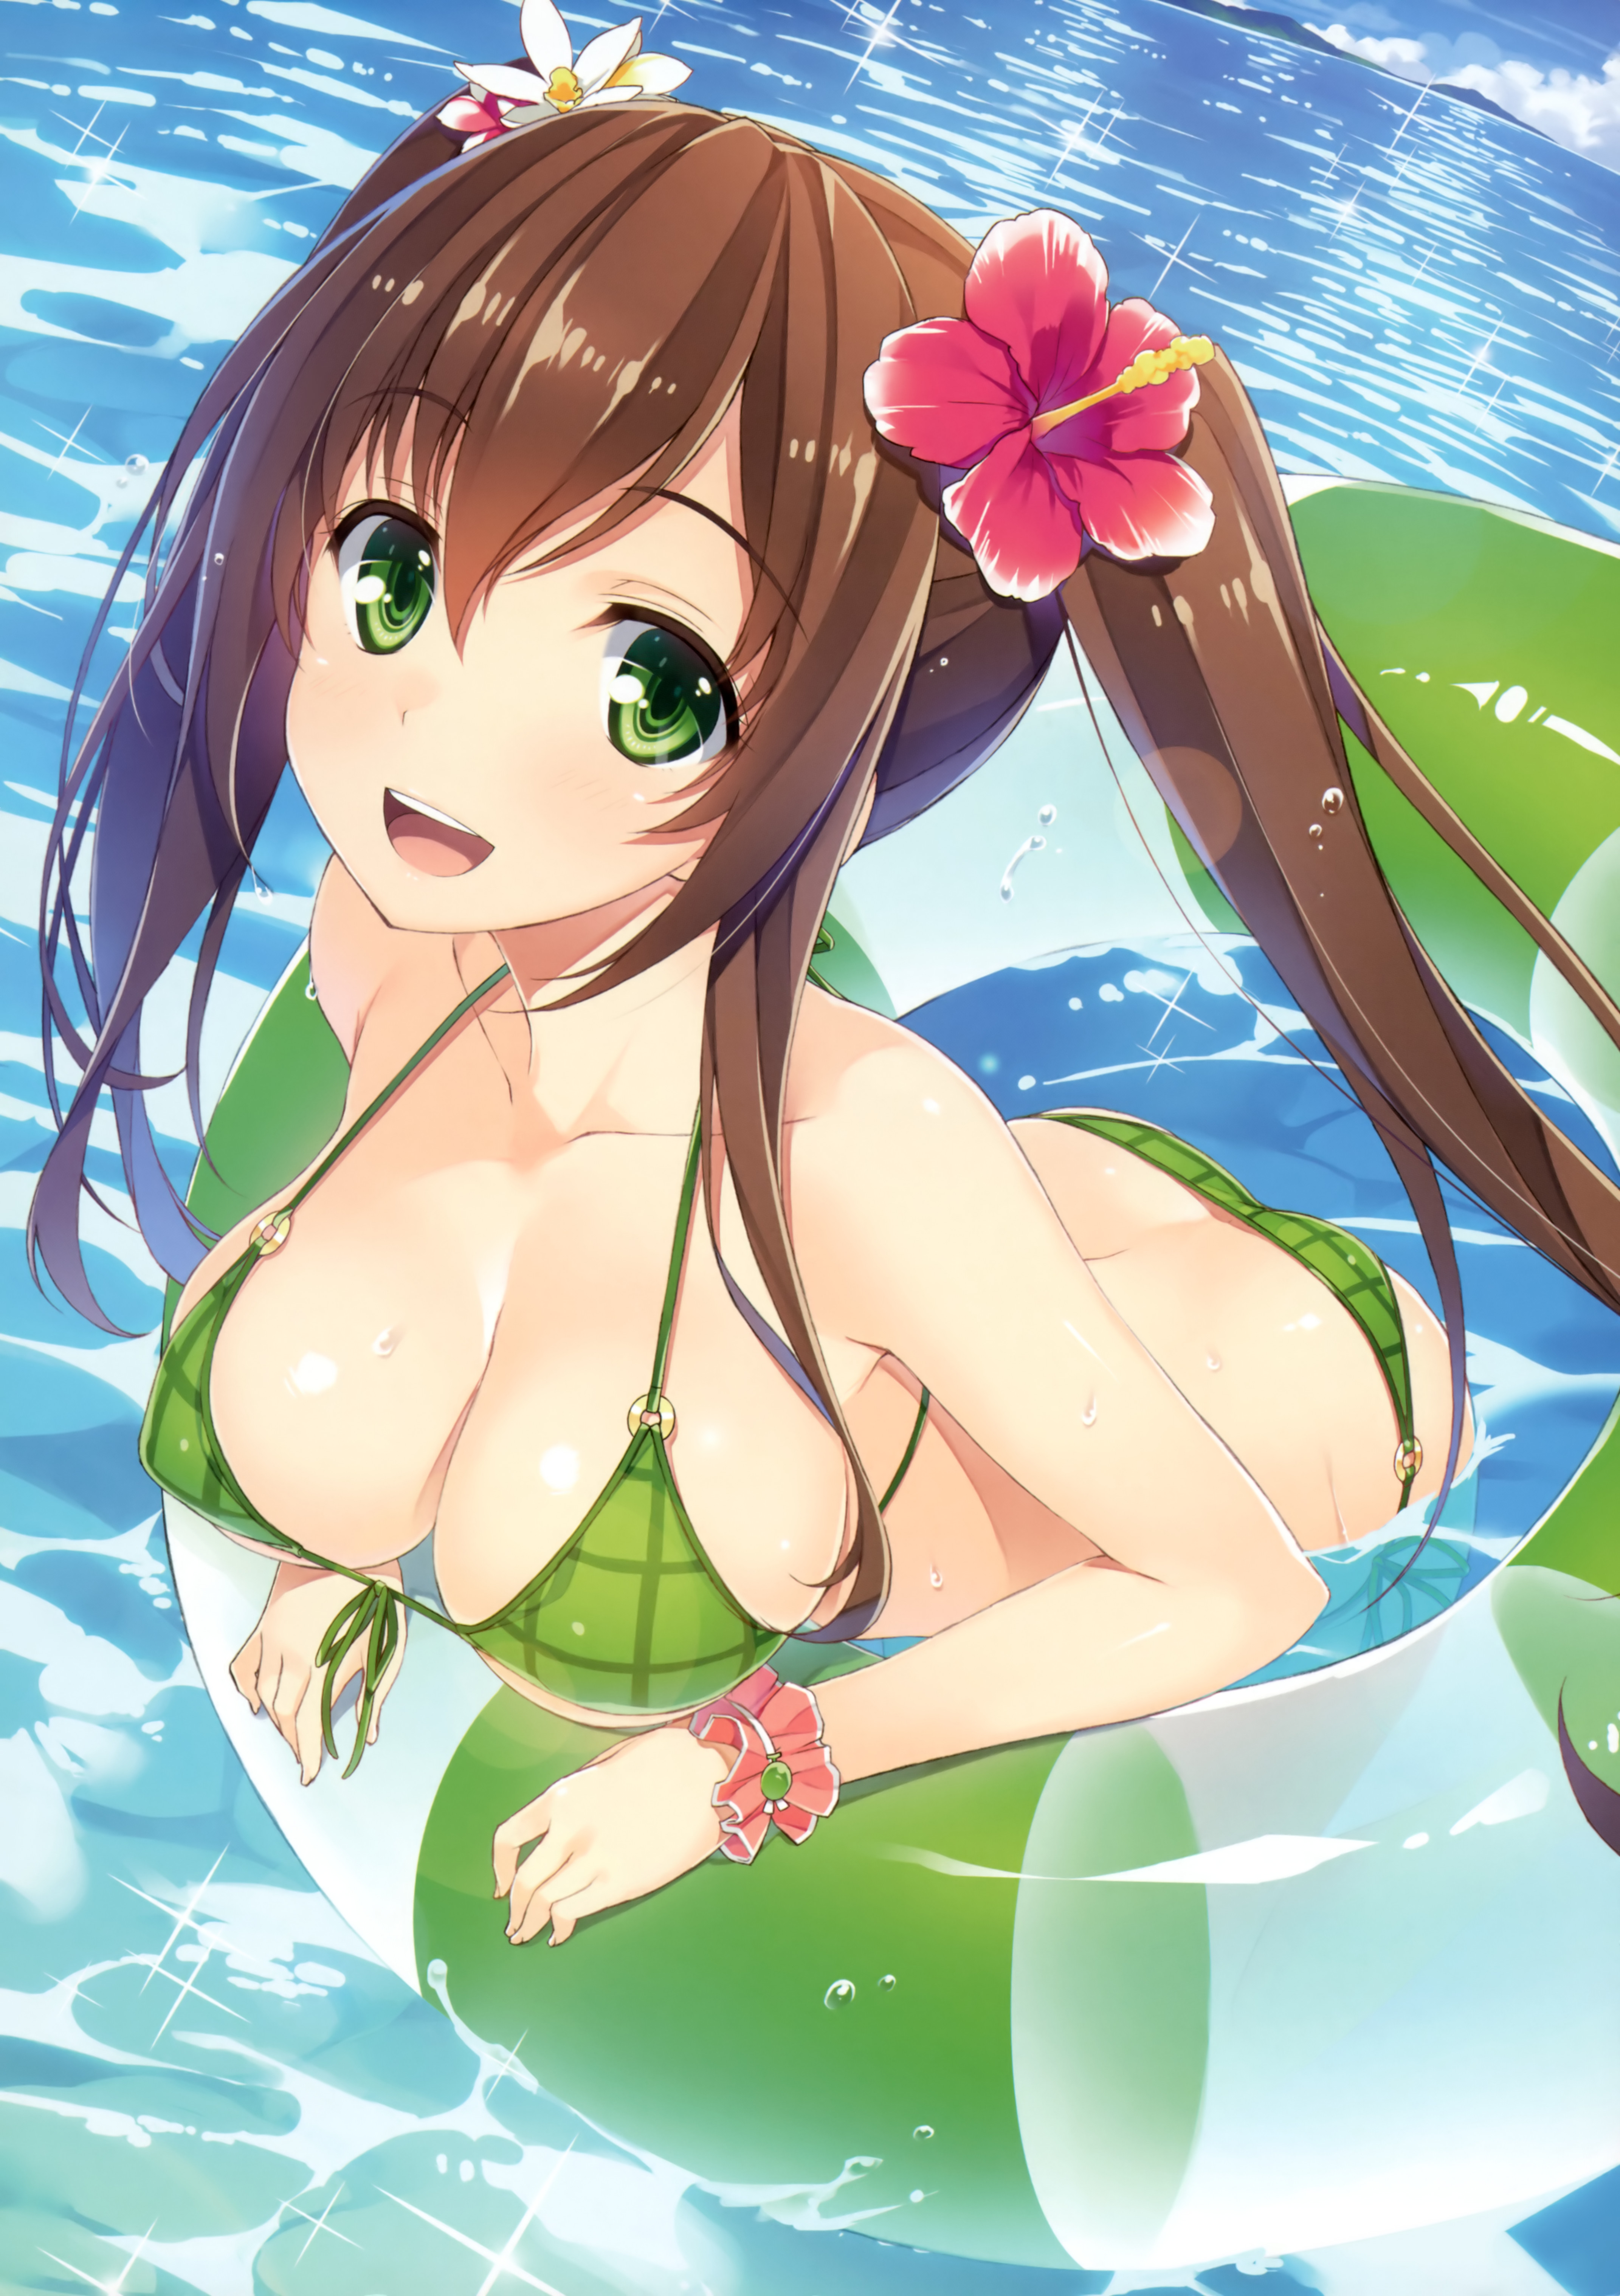 Anime 4285x6073 Yuuki Hagure original characters bikini cleavage